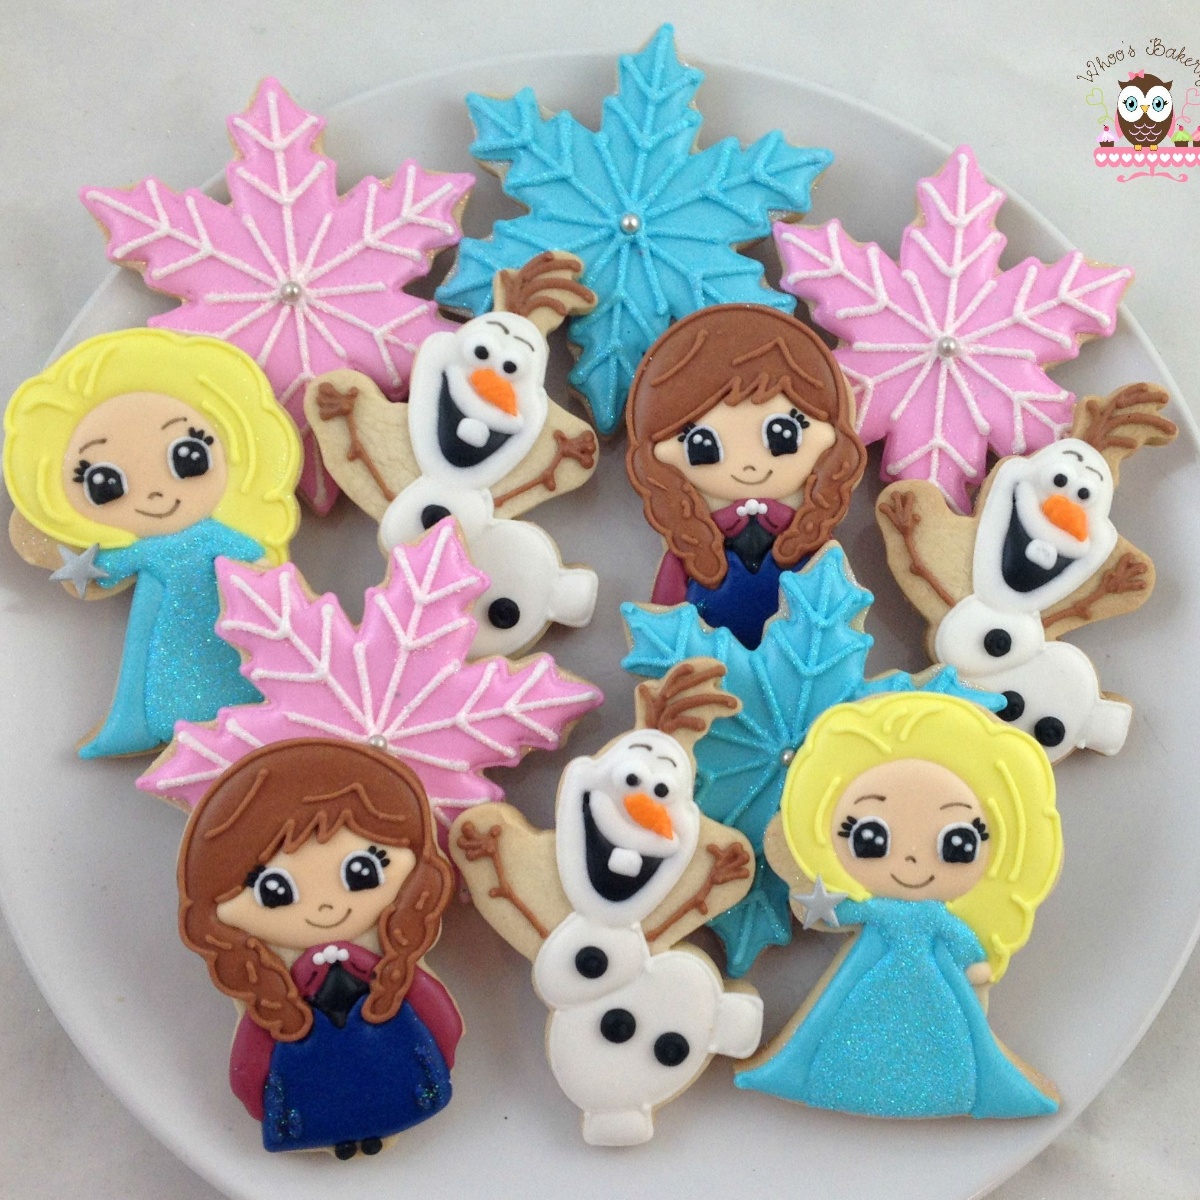 galletas decoradas de frozen